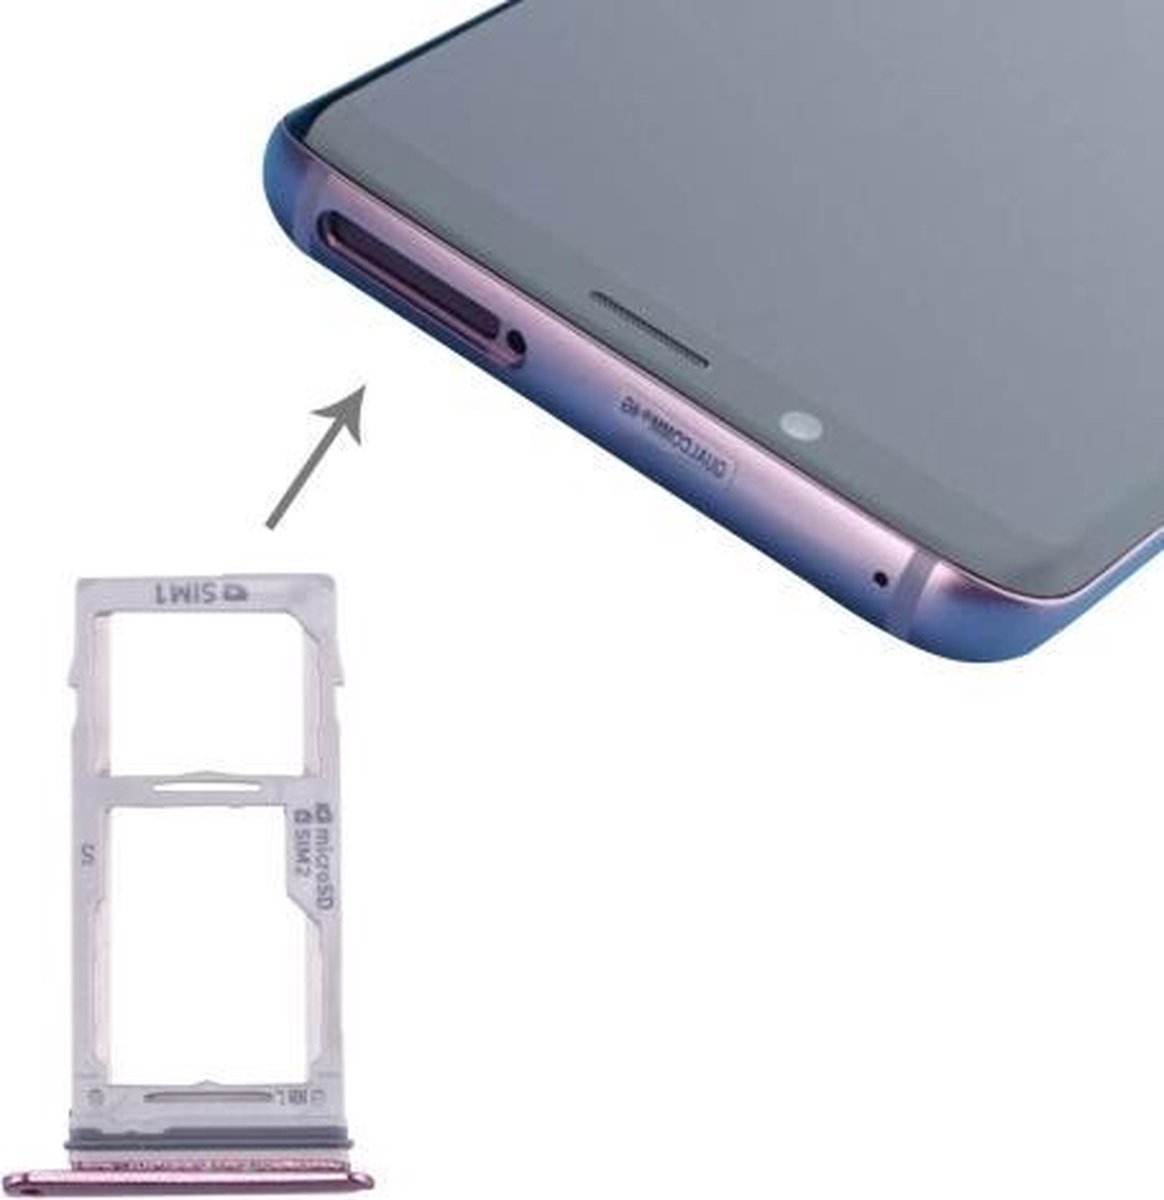 Samsung Galaxy S9 / S9+ Simkaarthouder| Sim Tray / Dual Sim| Paars / Purple| Reparatie Onderdeel